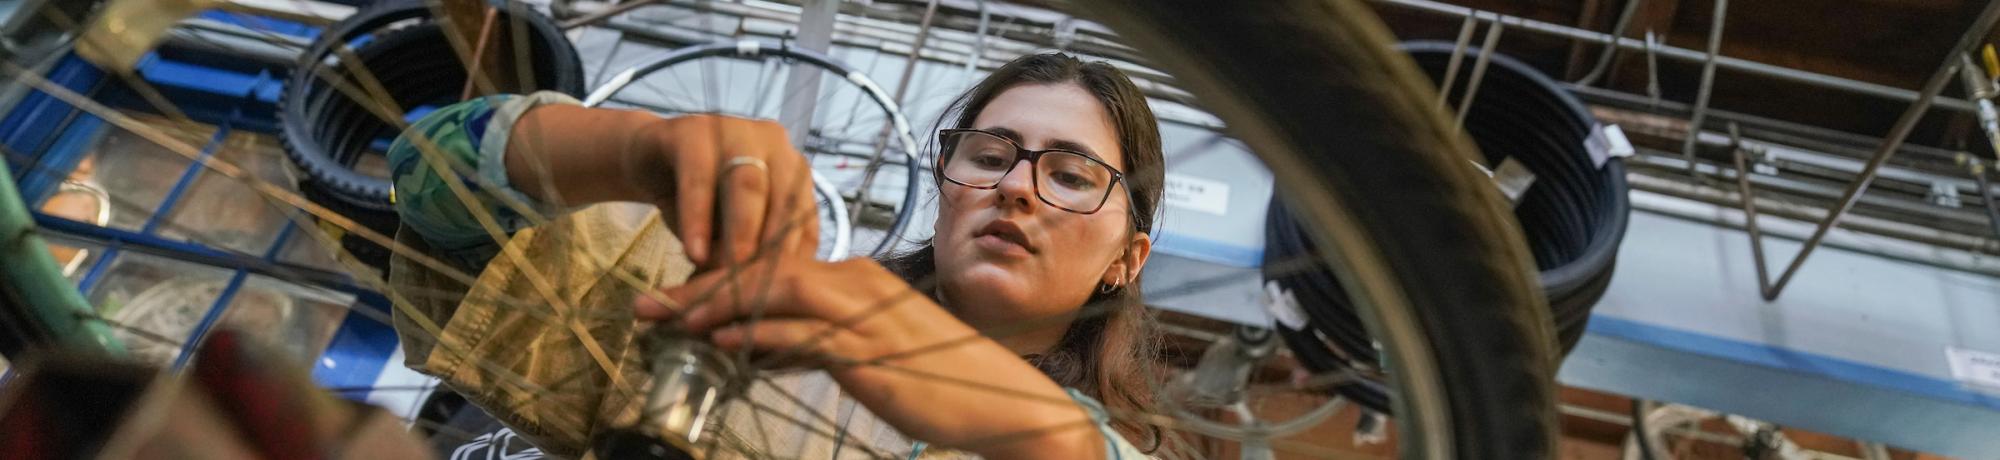 Student wearing glasses uses a tool to fix a bike wheel in the Bike Barn